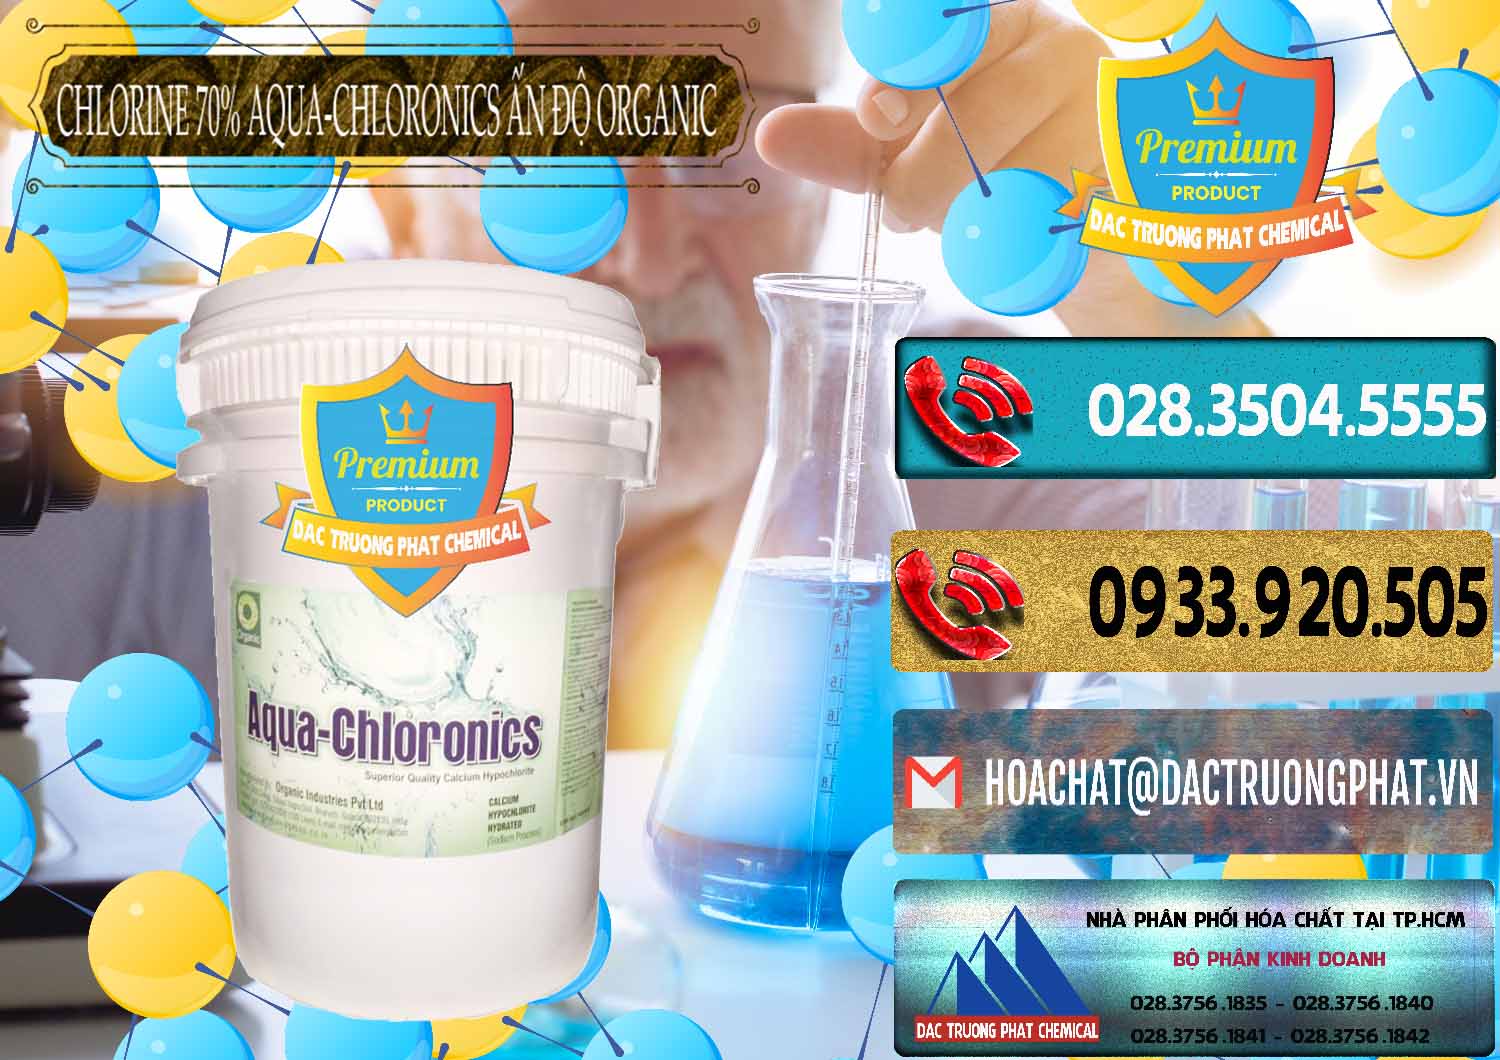 Chuyên bán ( cung cấp ) Chlorine – Clorin 70% Aqua-Chloronics Ấn Độ Organic India - 0211 - Cty cung cấp & nhập khẩu hóa chất tại TP.HCM - hoachatdetnhuom.com